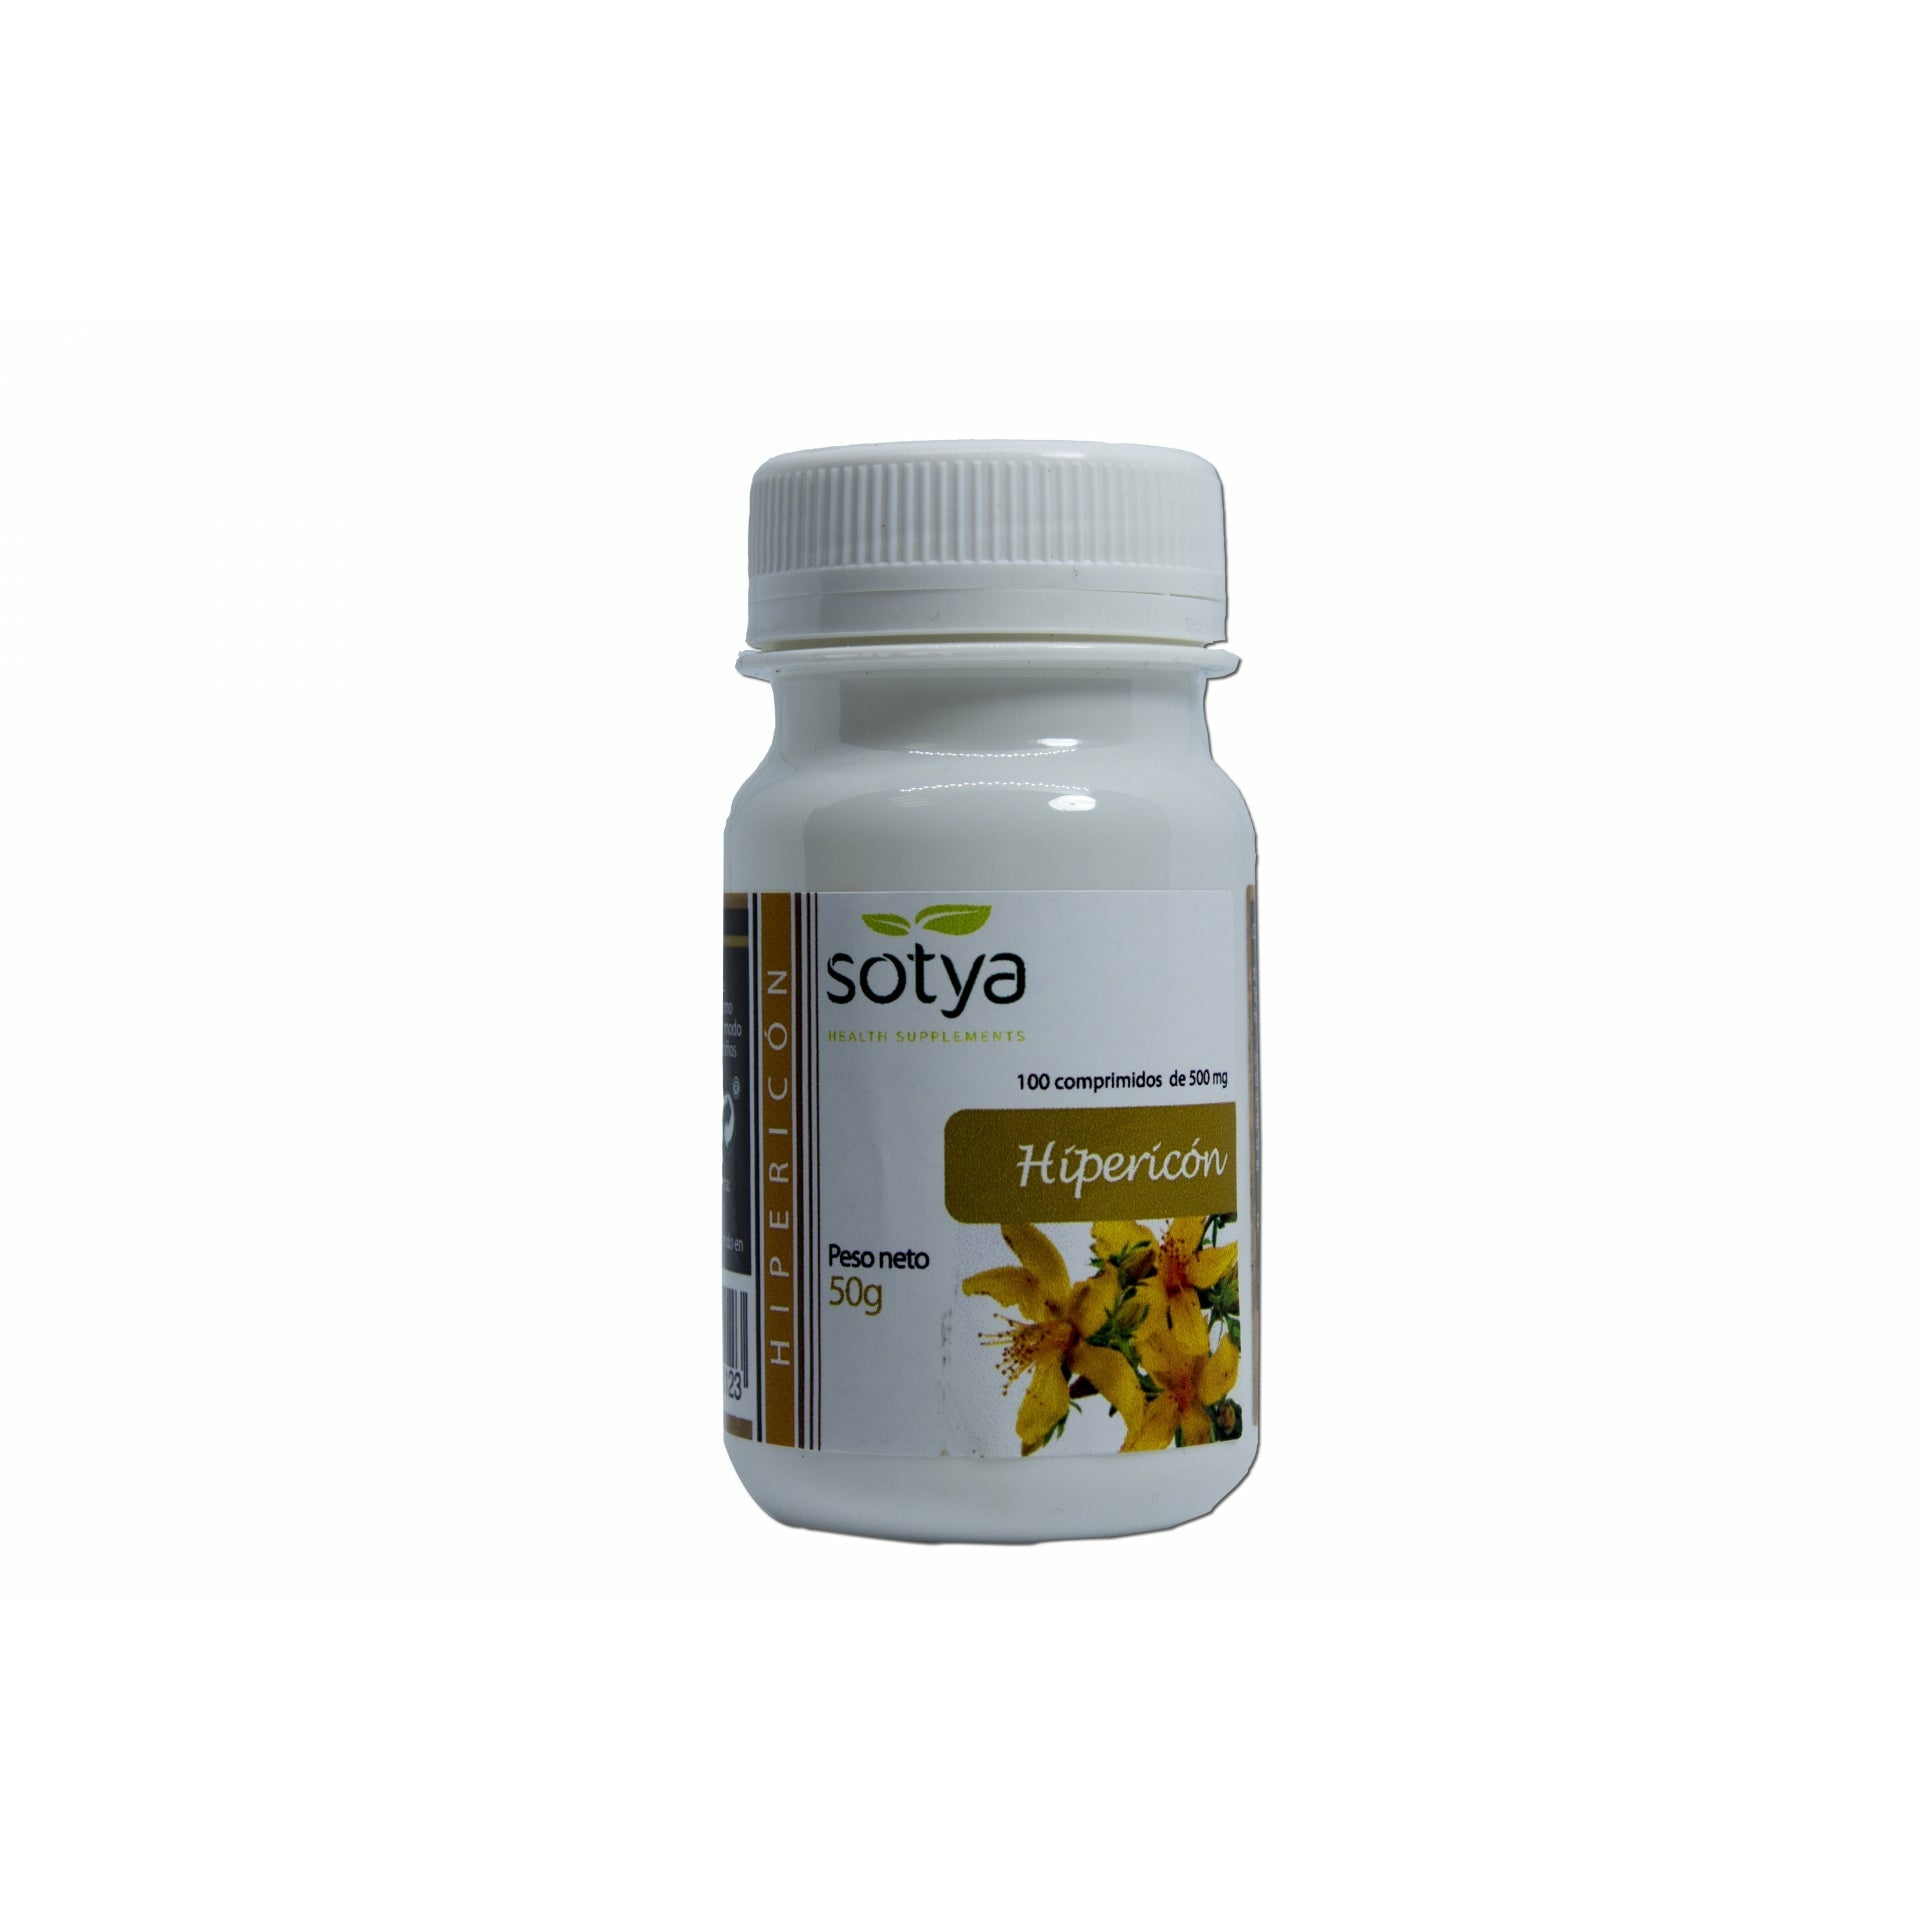 Sotya-Hipericon-100-Comprimidos--Biopharmacia,-Parafarmacia-online